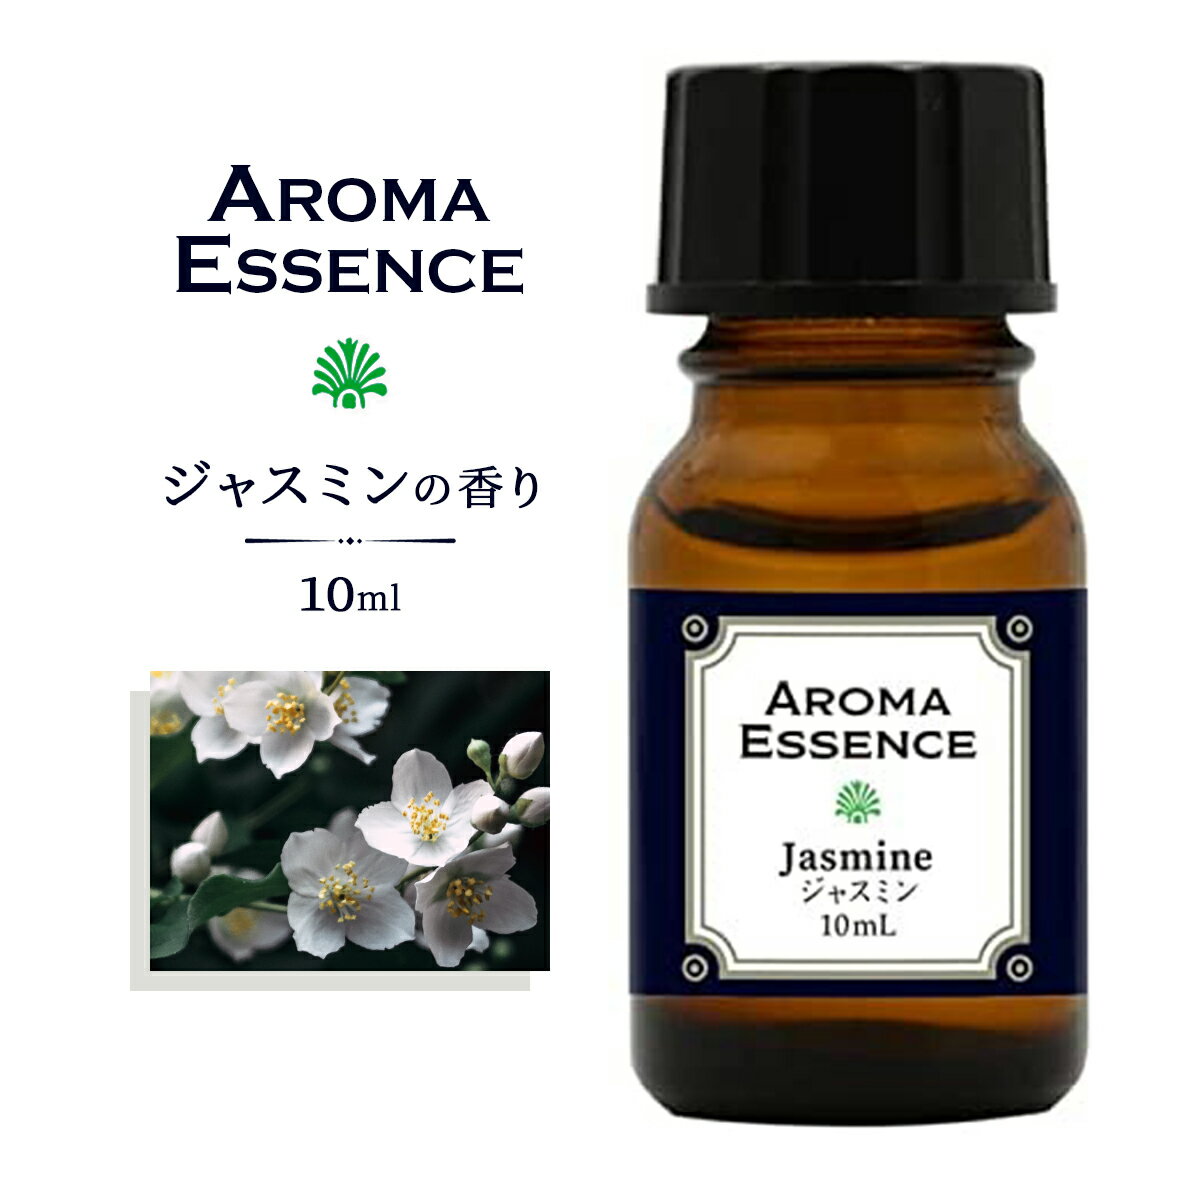 アロマエッセンス ジャスミン 10ml アロマオイル 調合香料 芳香用 アロマ加湿器 部屋 全体 自律神経 イライラ 解消 花以外の プレゼント に